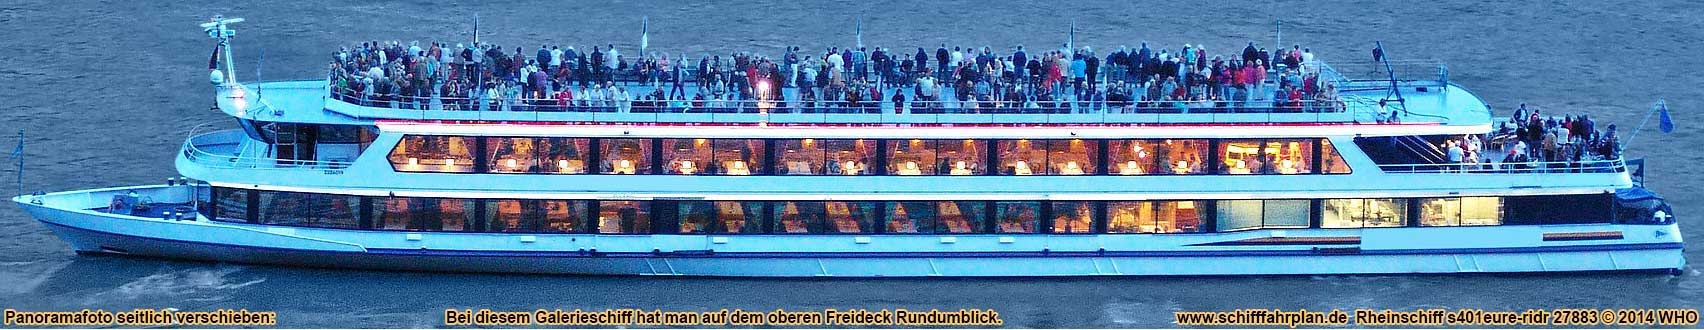 Rheinschifffahrt mit dem Galerieschiff auf dem Niederrhein zwischen Emmerich, Wesel, Duisburg, Düsseldorf, Leverkusen und Köln am Rhein.